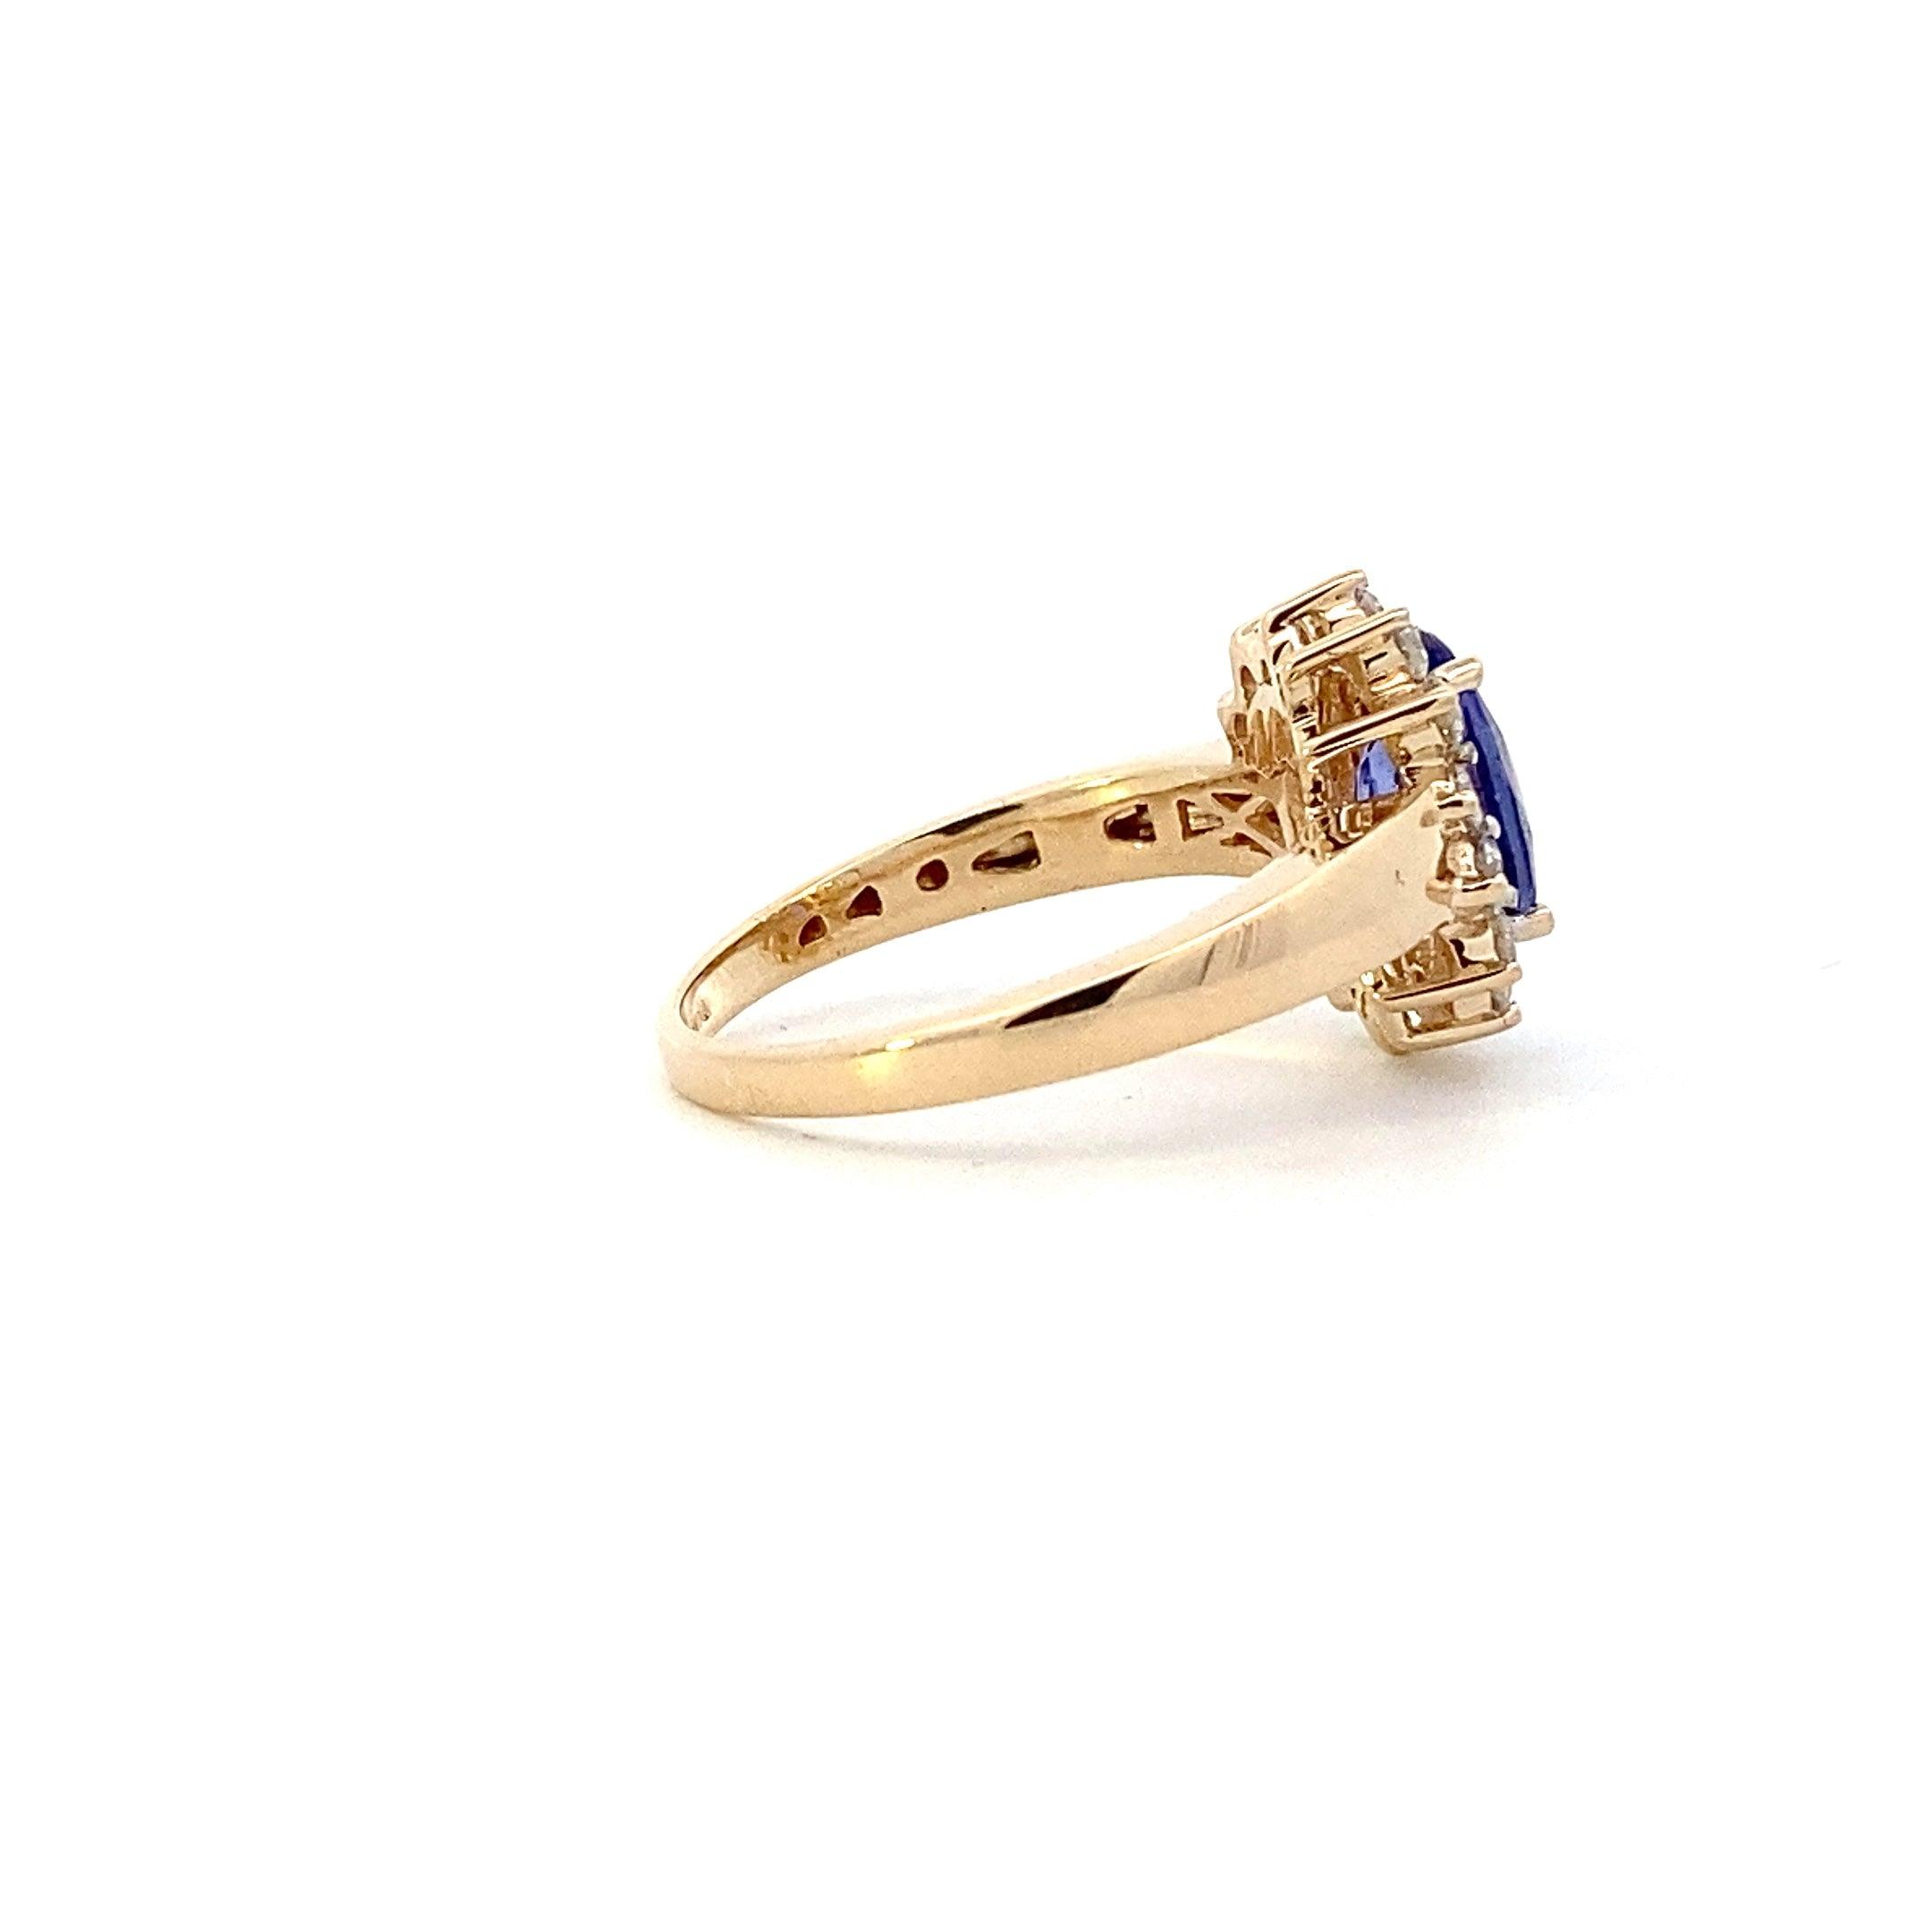 14K Yellow Gold Tanzanite Women's Diamond Ring - 0.51ct - ipawnishop.com